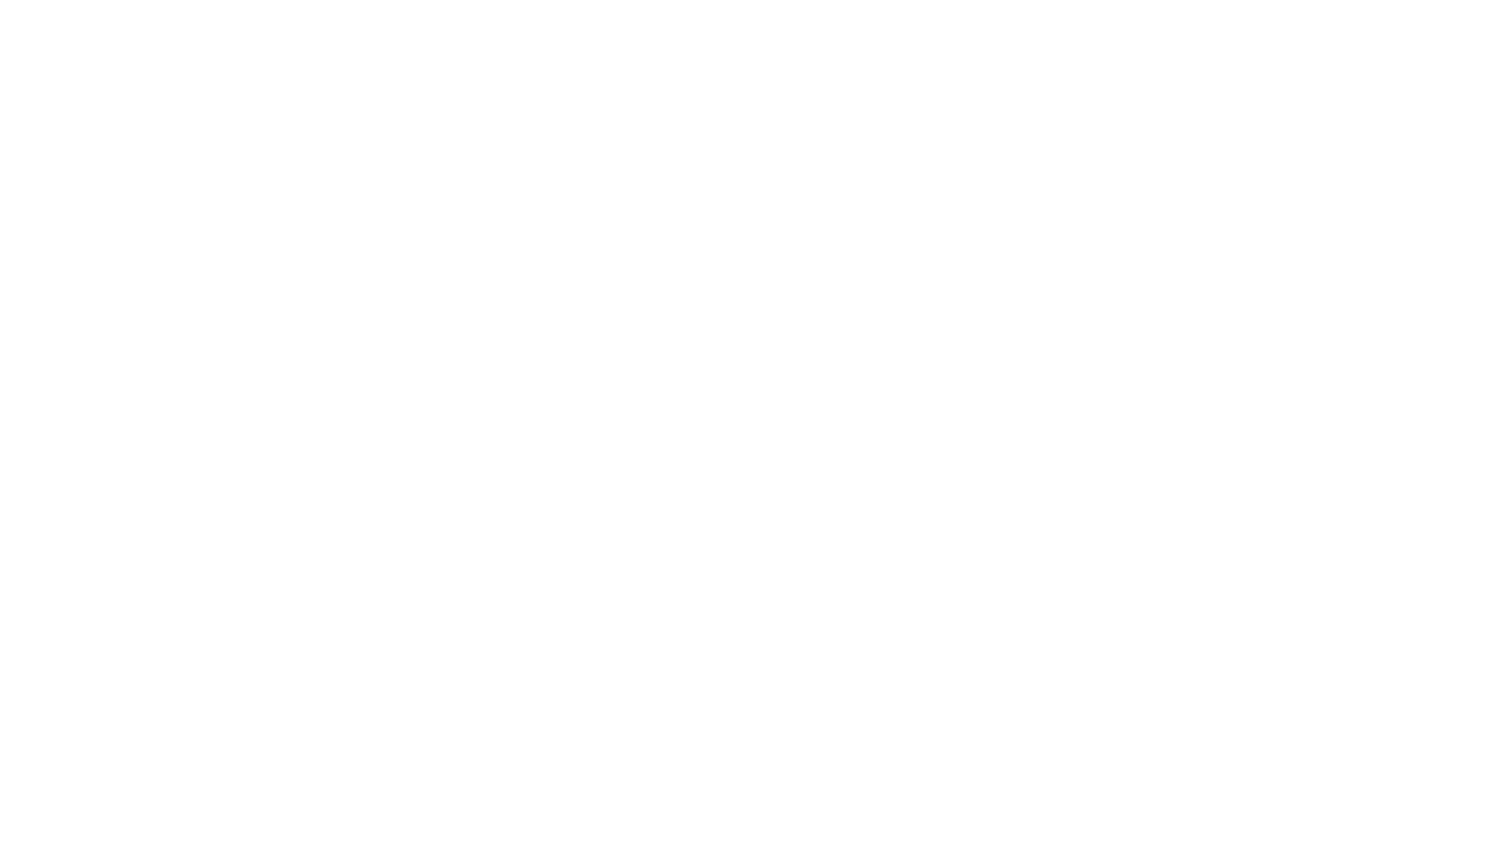 Original Media For Gamers